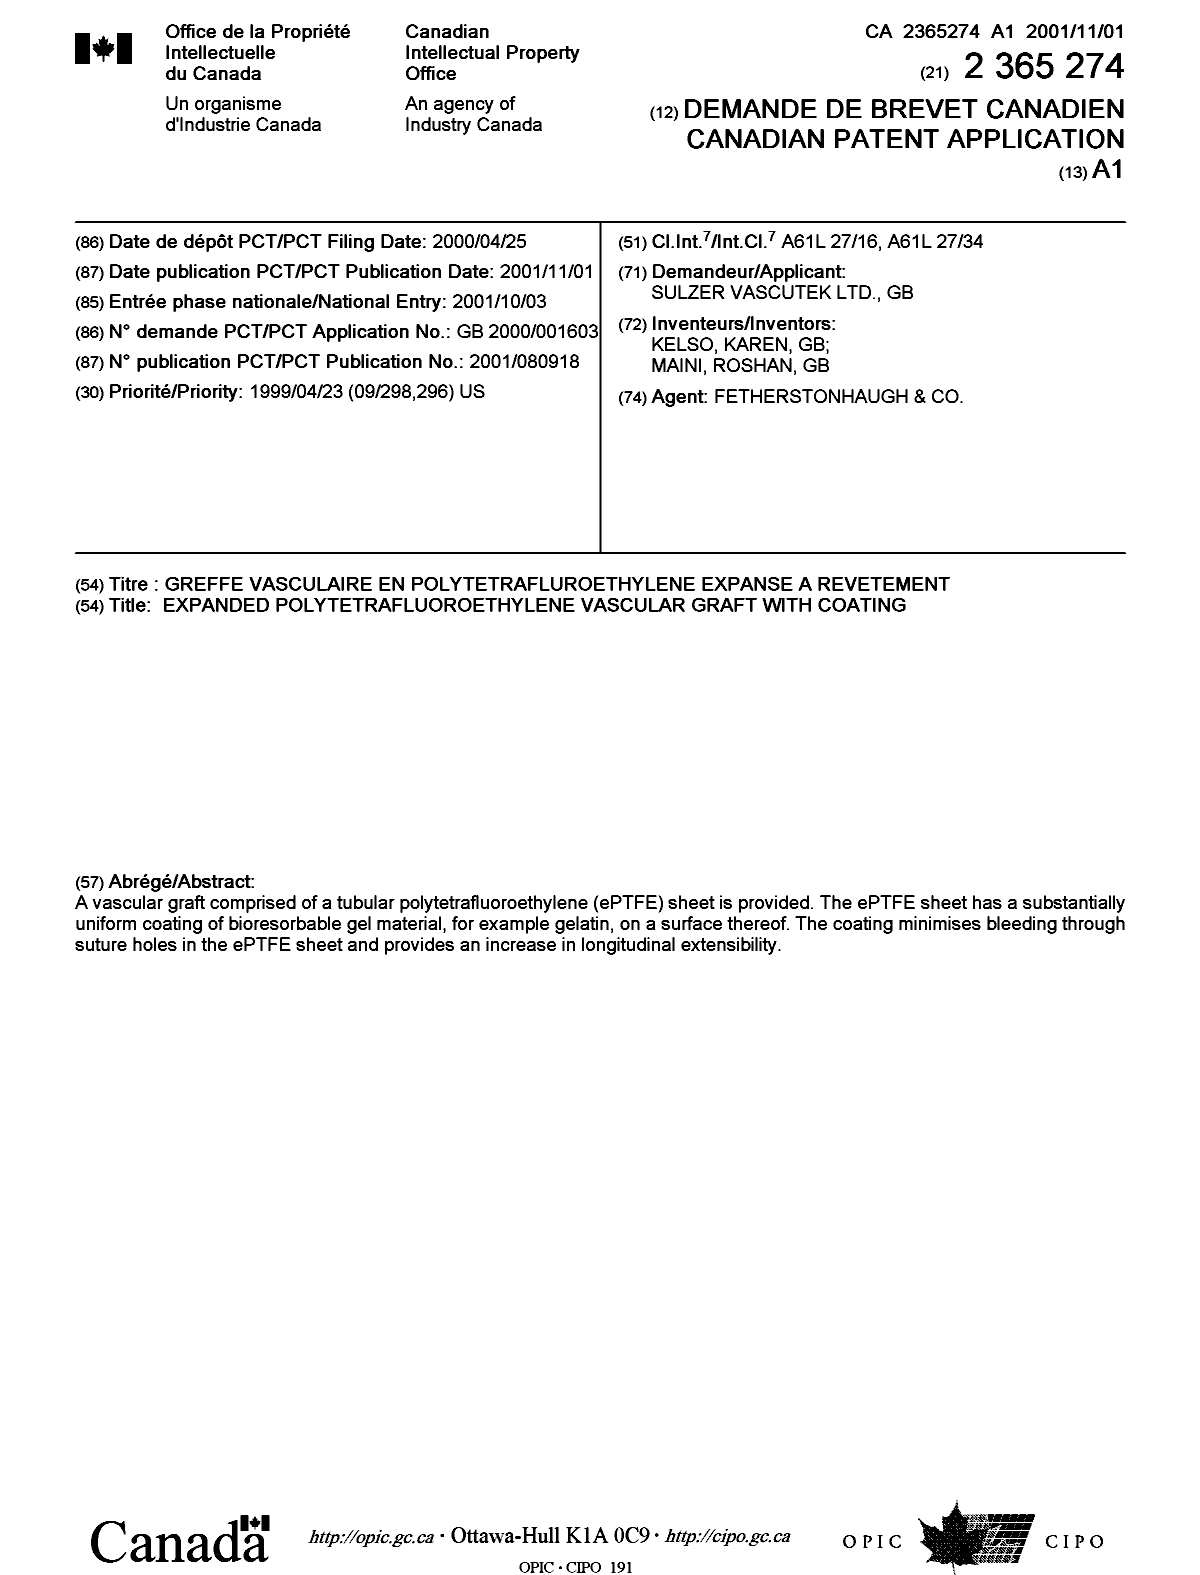 Document de brevet canadien 2365274. Page couverture 20020204. Image 1 de 1